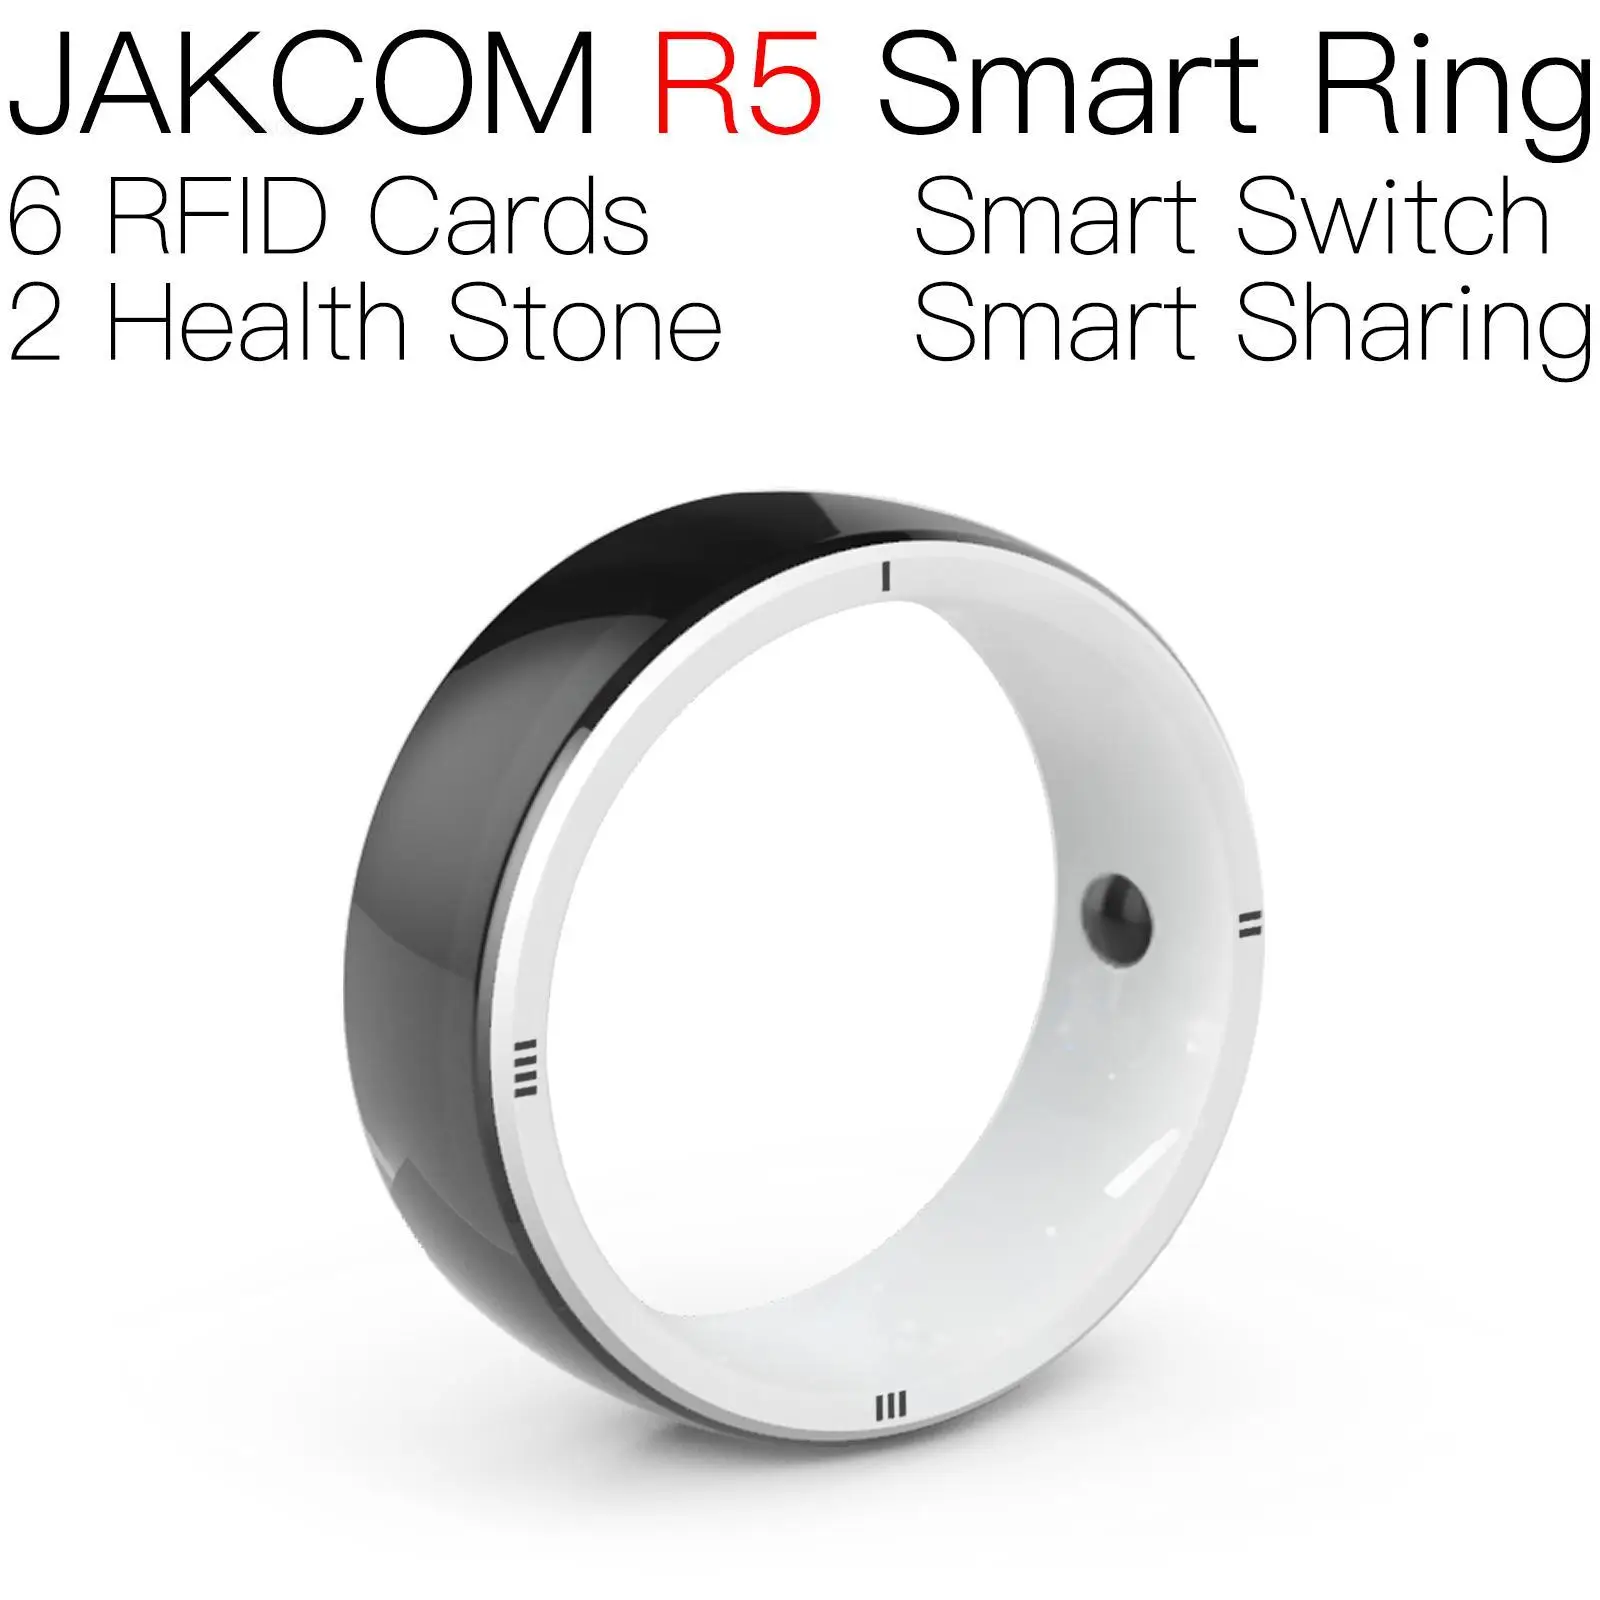 Смарт-кольцо JAKCOM R5 соответствует температурной метке simore starter uhf rfid считыватель таблички nfc 7-байтовый uid mini carte crossing